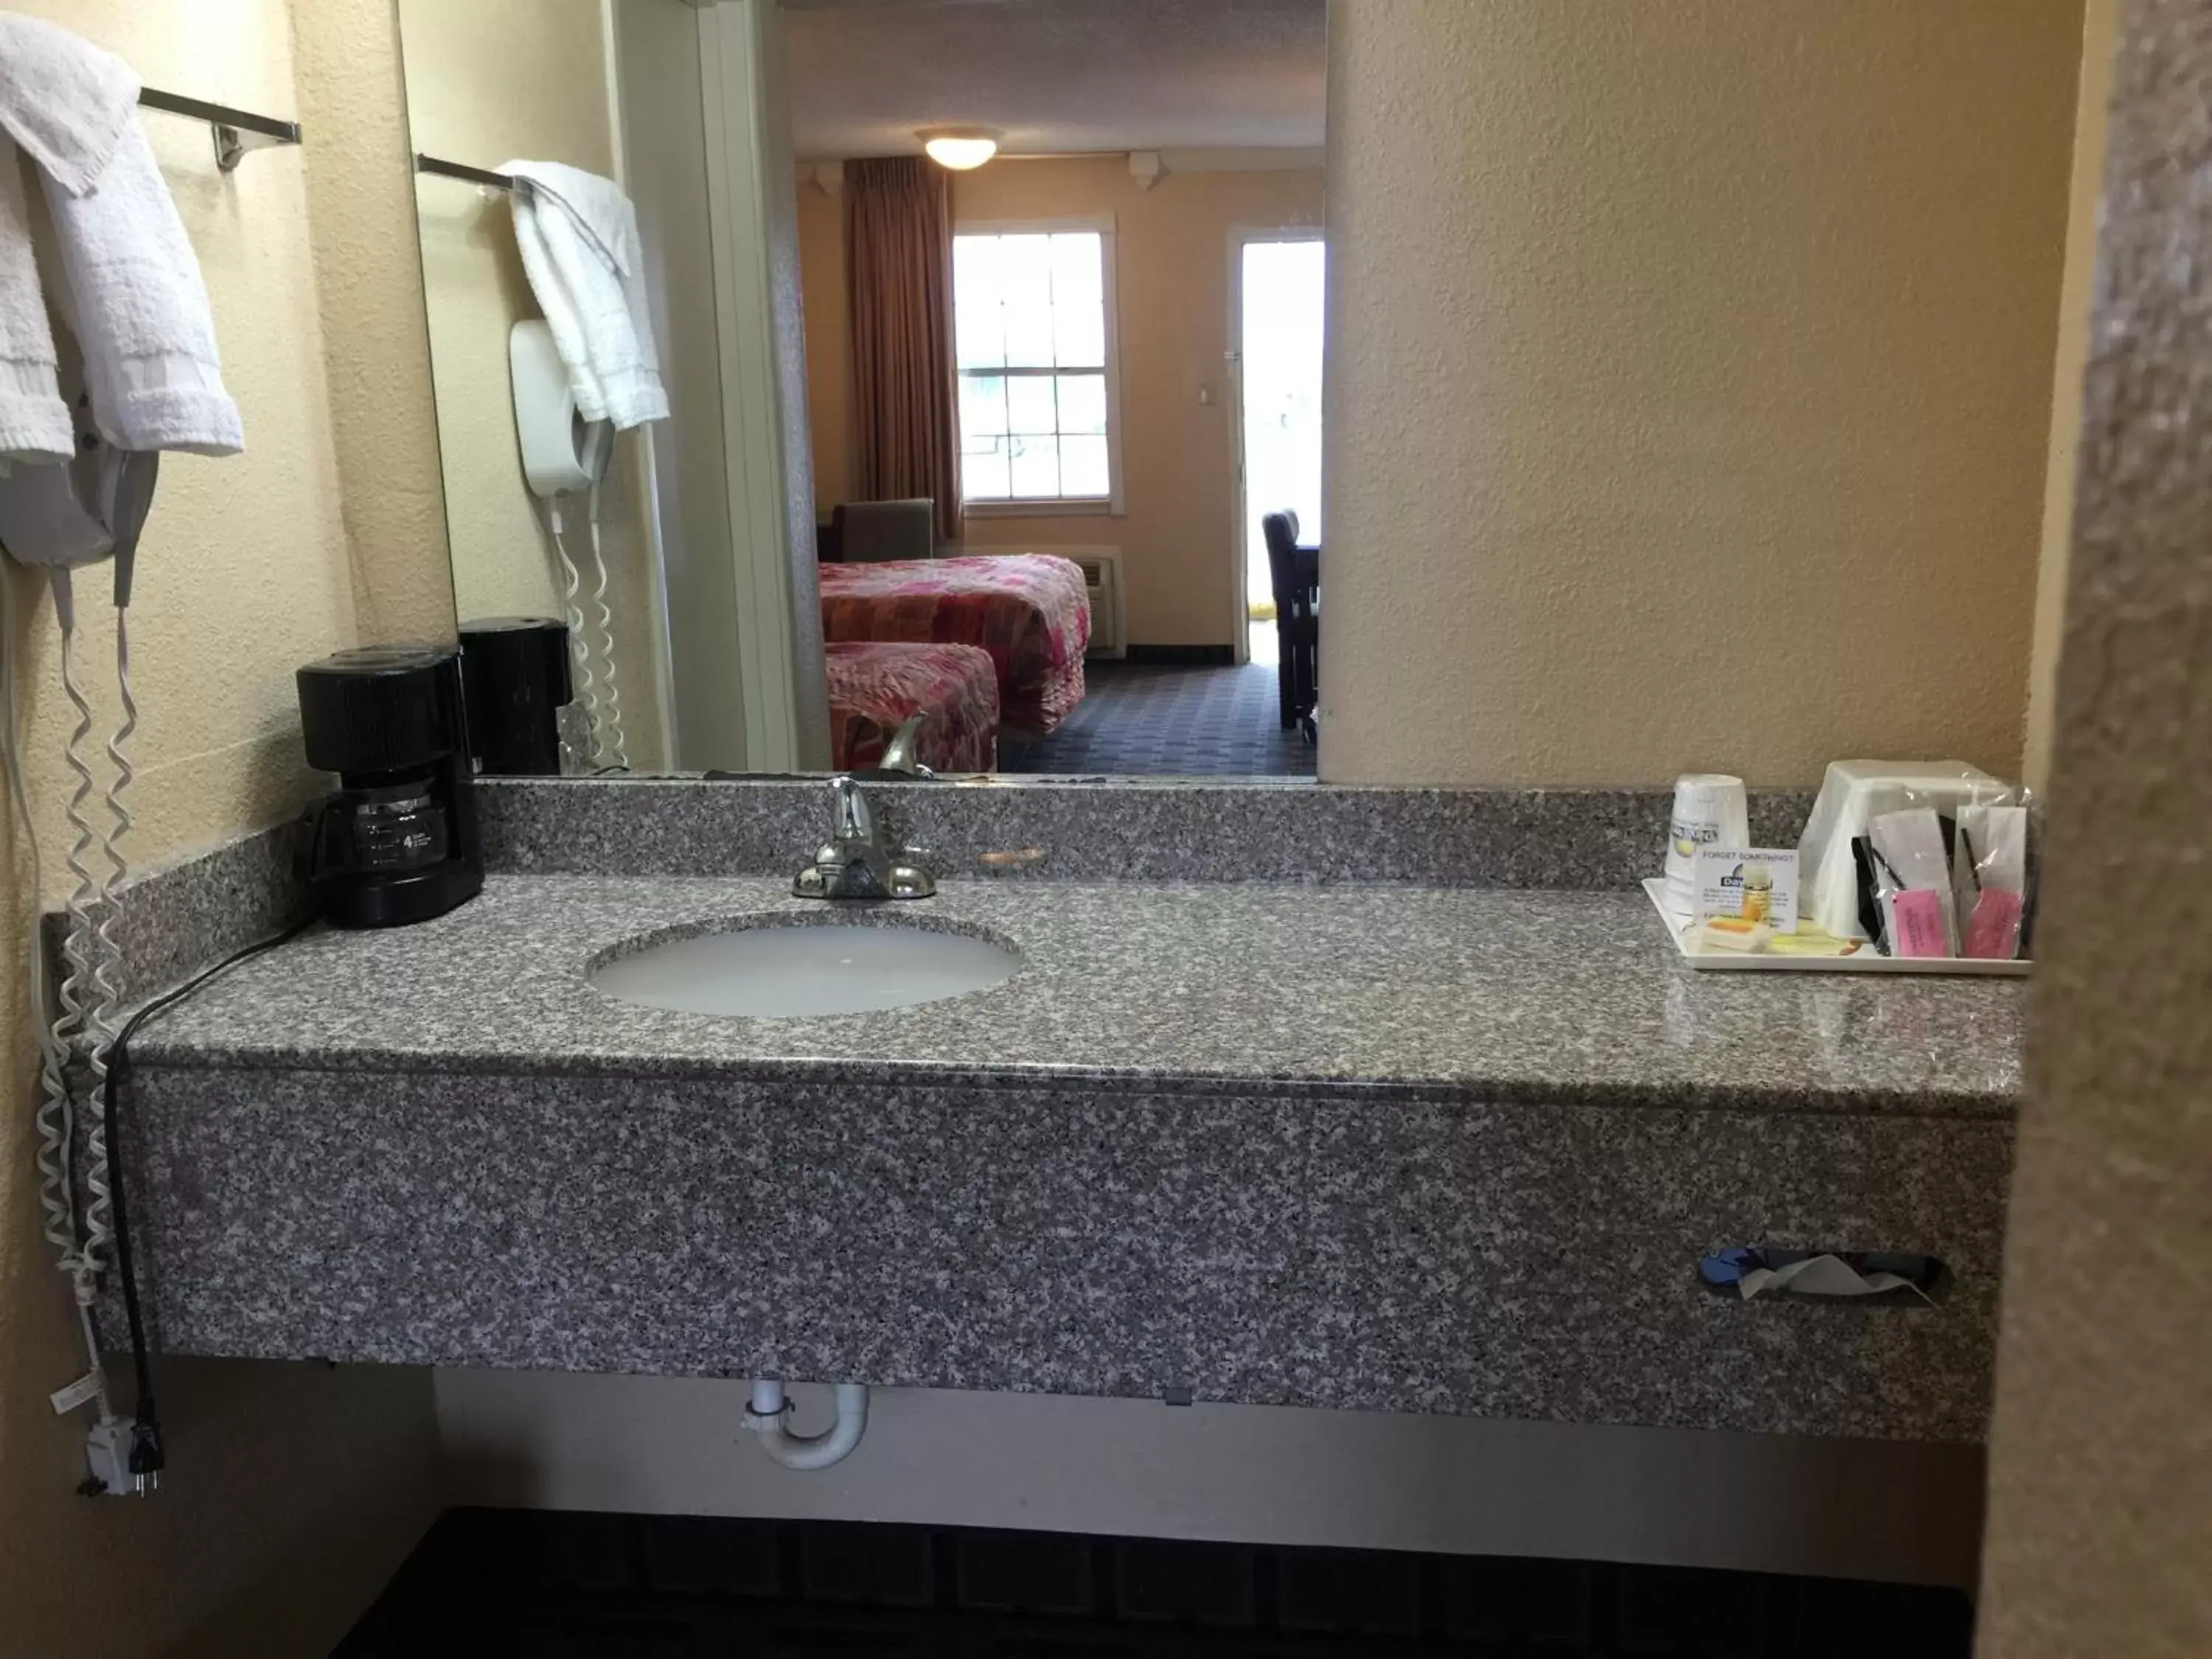 Bathroom in Knights Inn Greenville